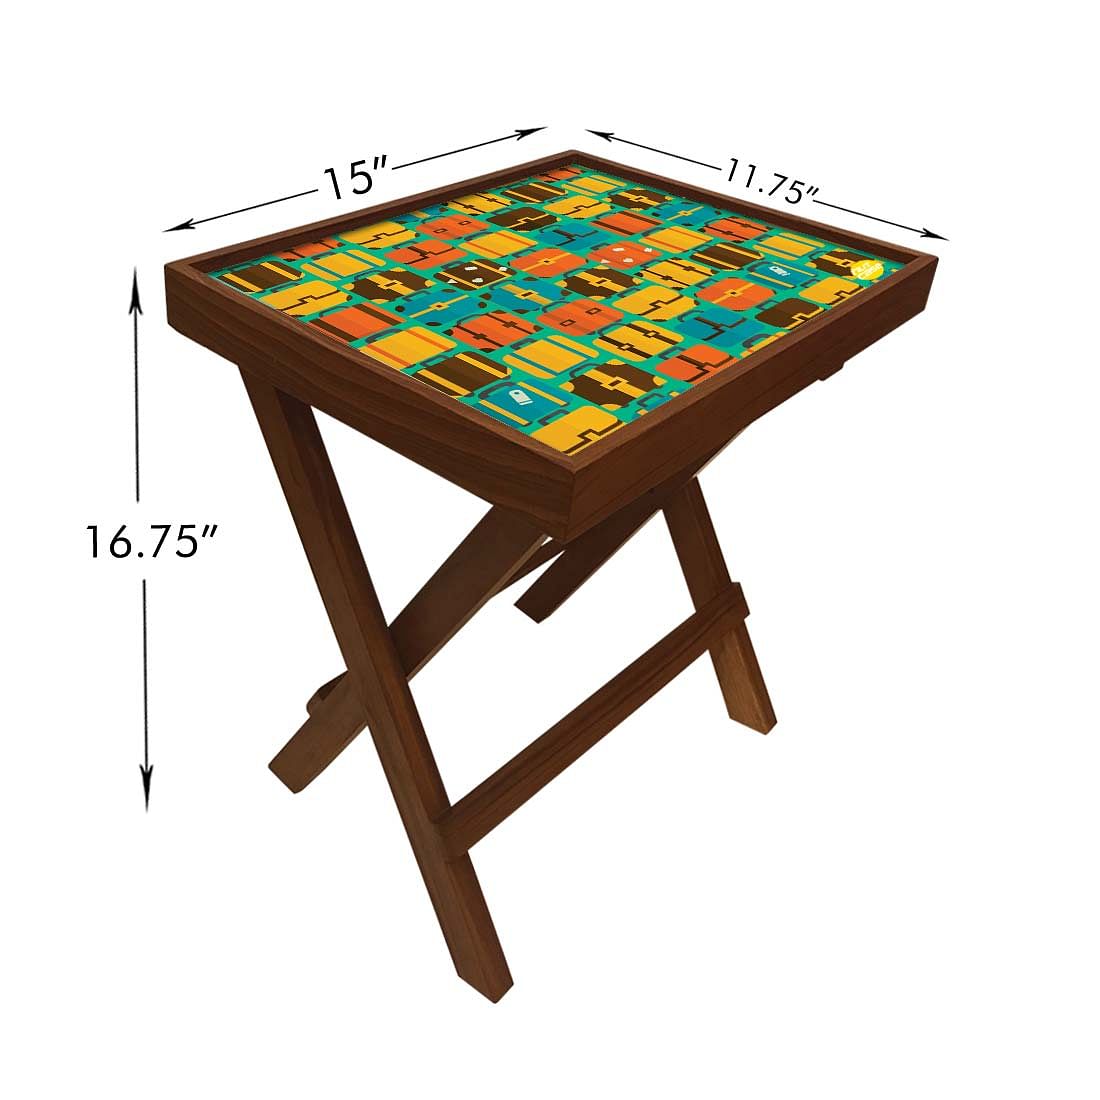 Folding Side Table - Teak Wood - Suitcases Nutcase